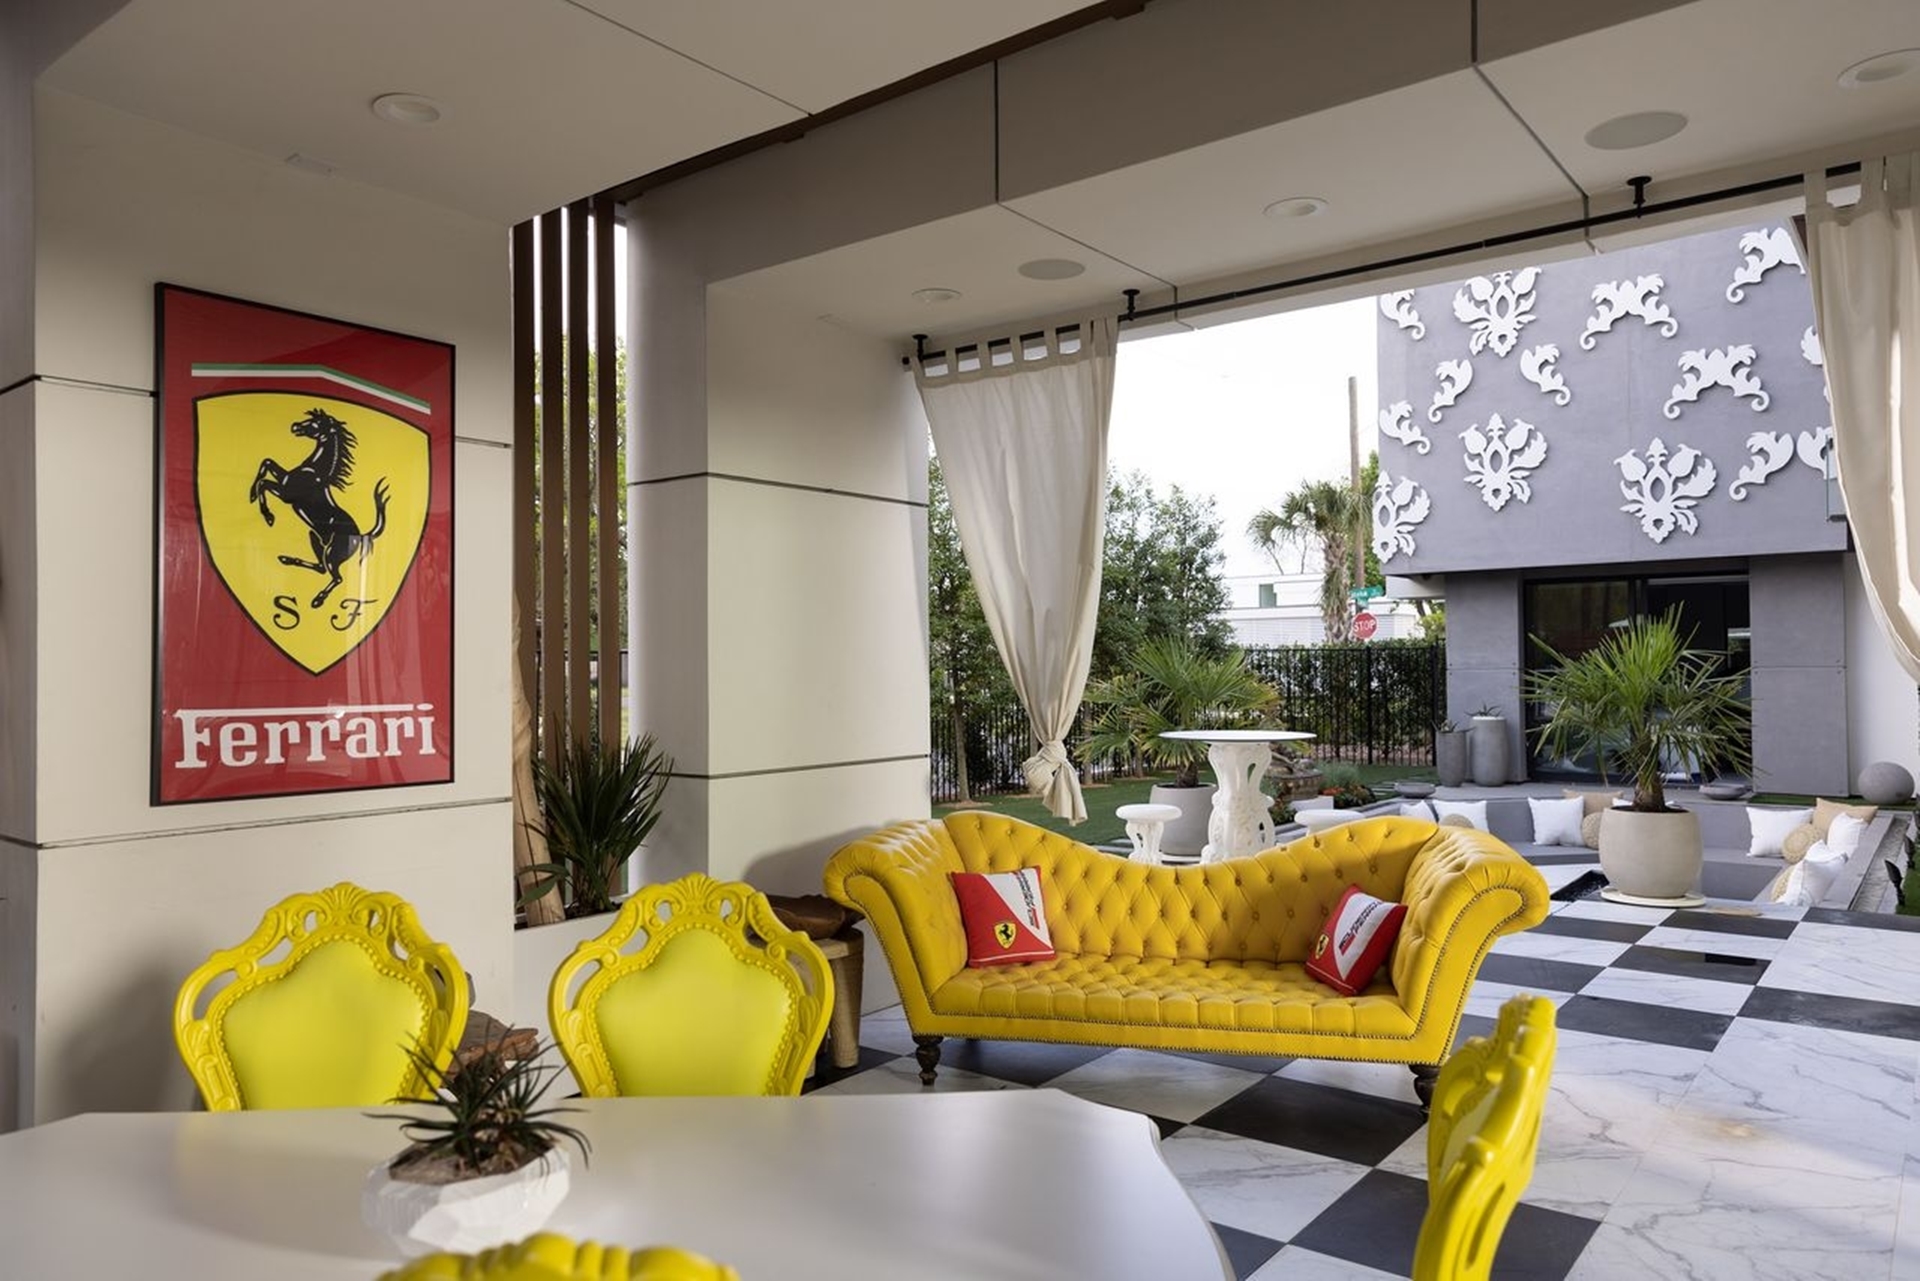 ‘Nhà Ferrari’ giá 3,96 triệu USD: Như garage siêu xe, chỉ không kèm ‘Ngựa chồm’ - Ảnh 12.